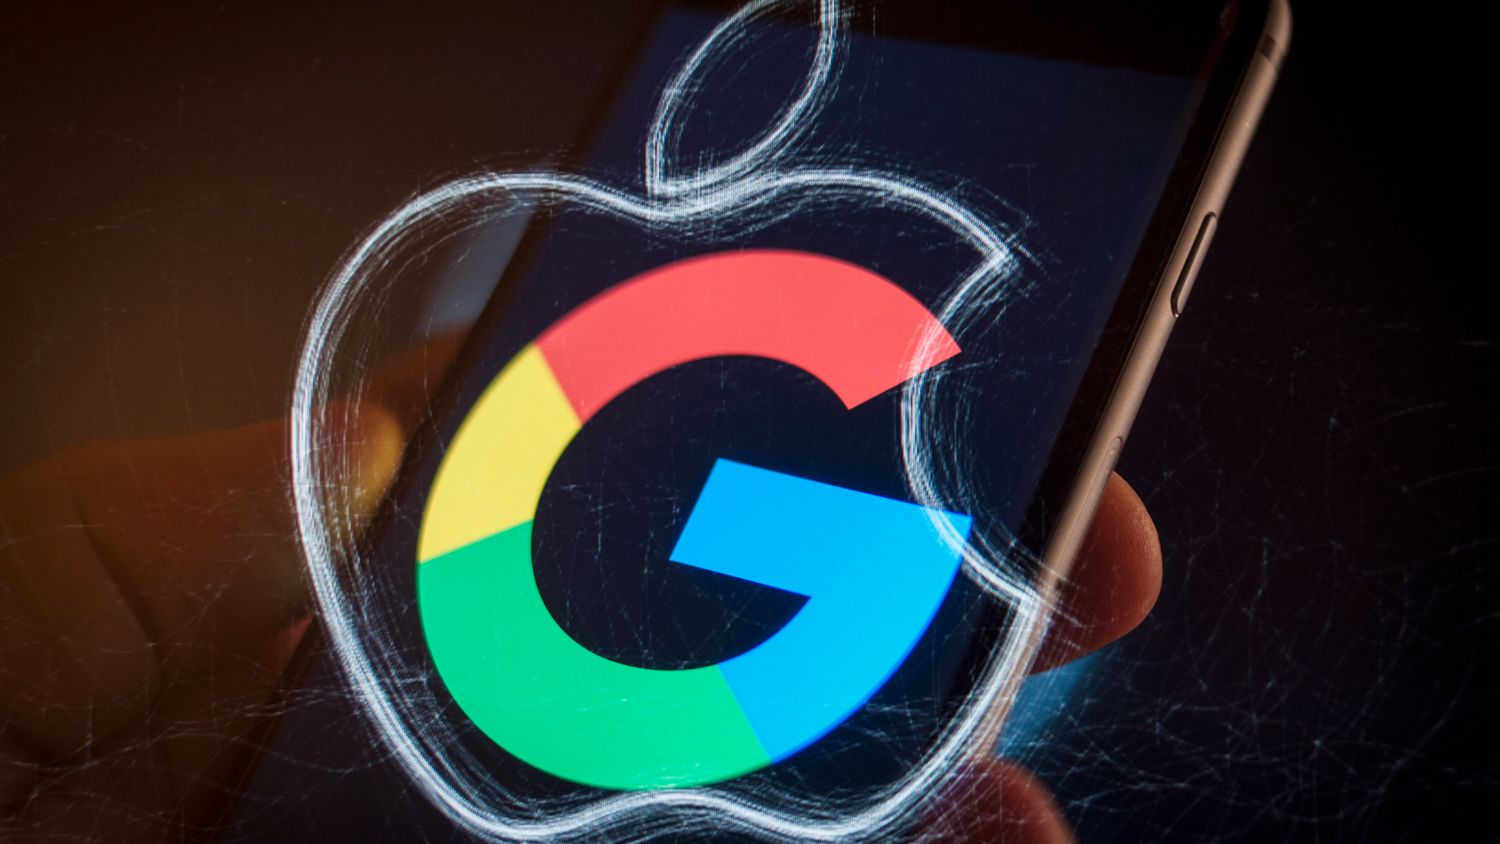 Google платит Apple от 18 до 20 миллиардов долларов в год за право быть поисковой системой по умолчанию в iOS